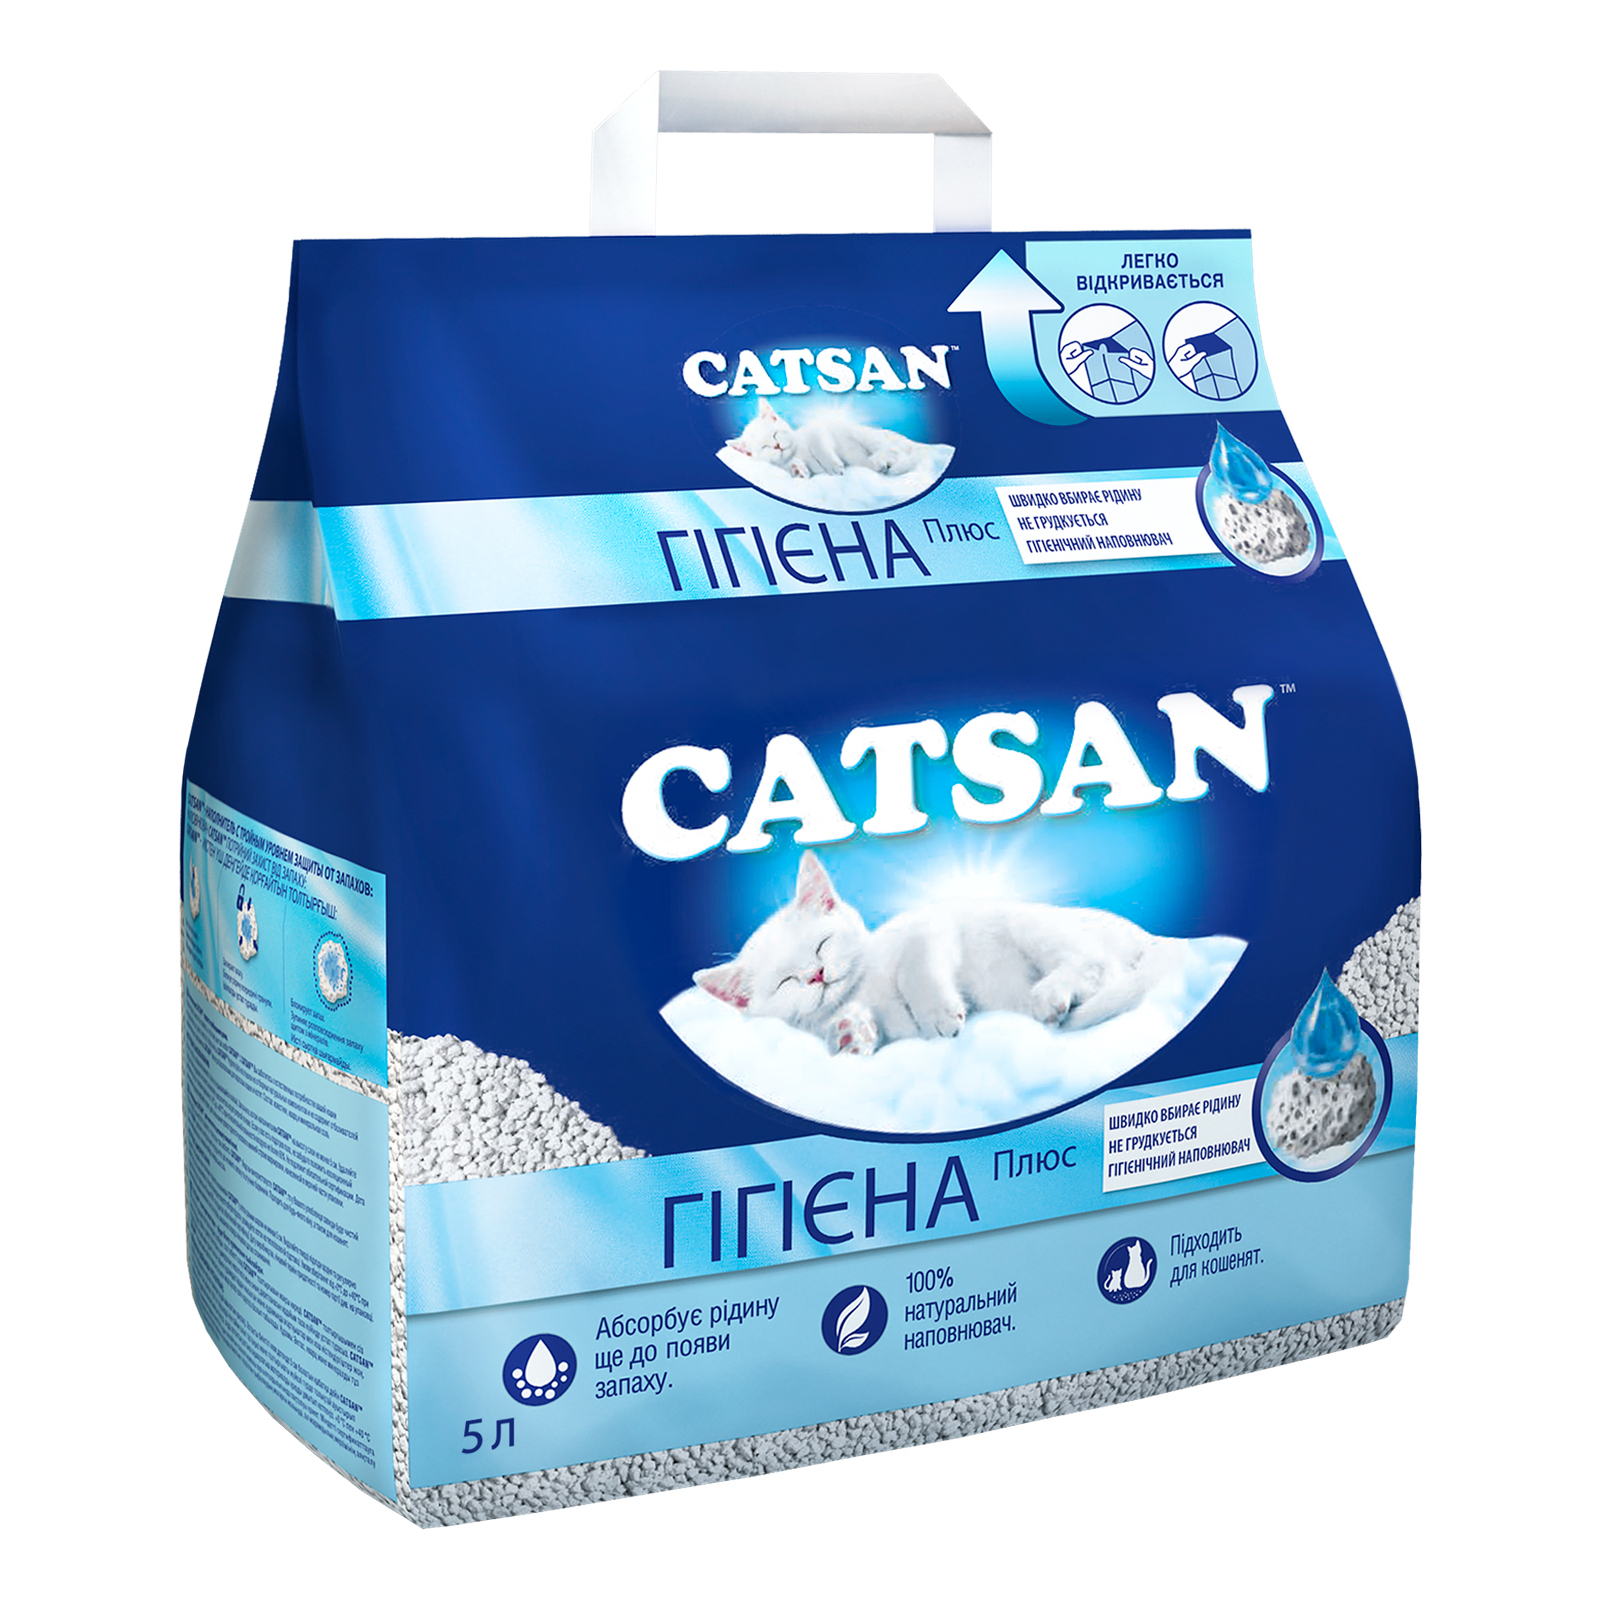 Наповнювач для туалету Catsan Hygiene plus Мінеральний вбирний 10 л (4008429130403)